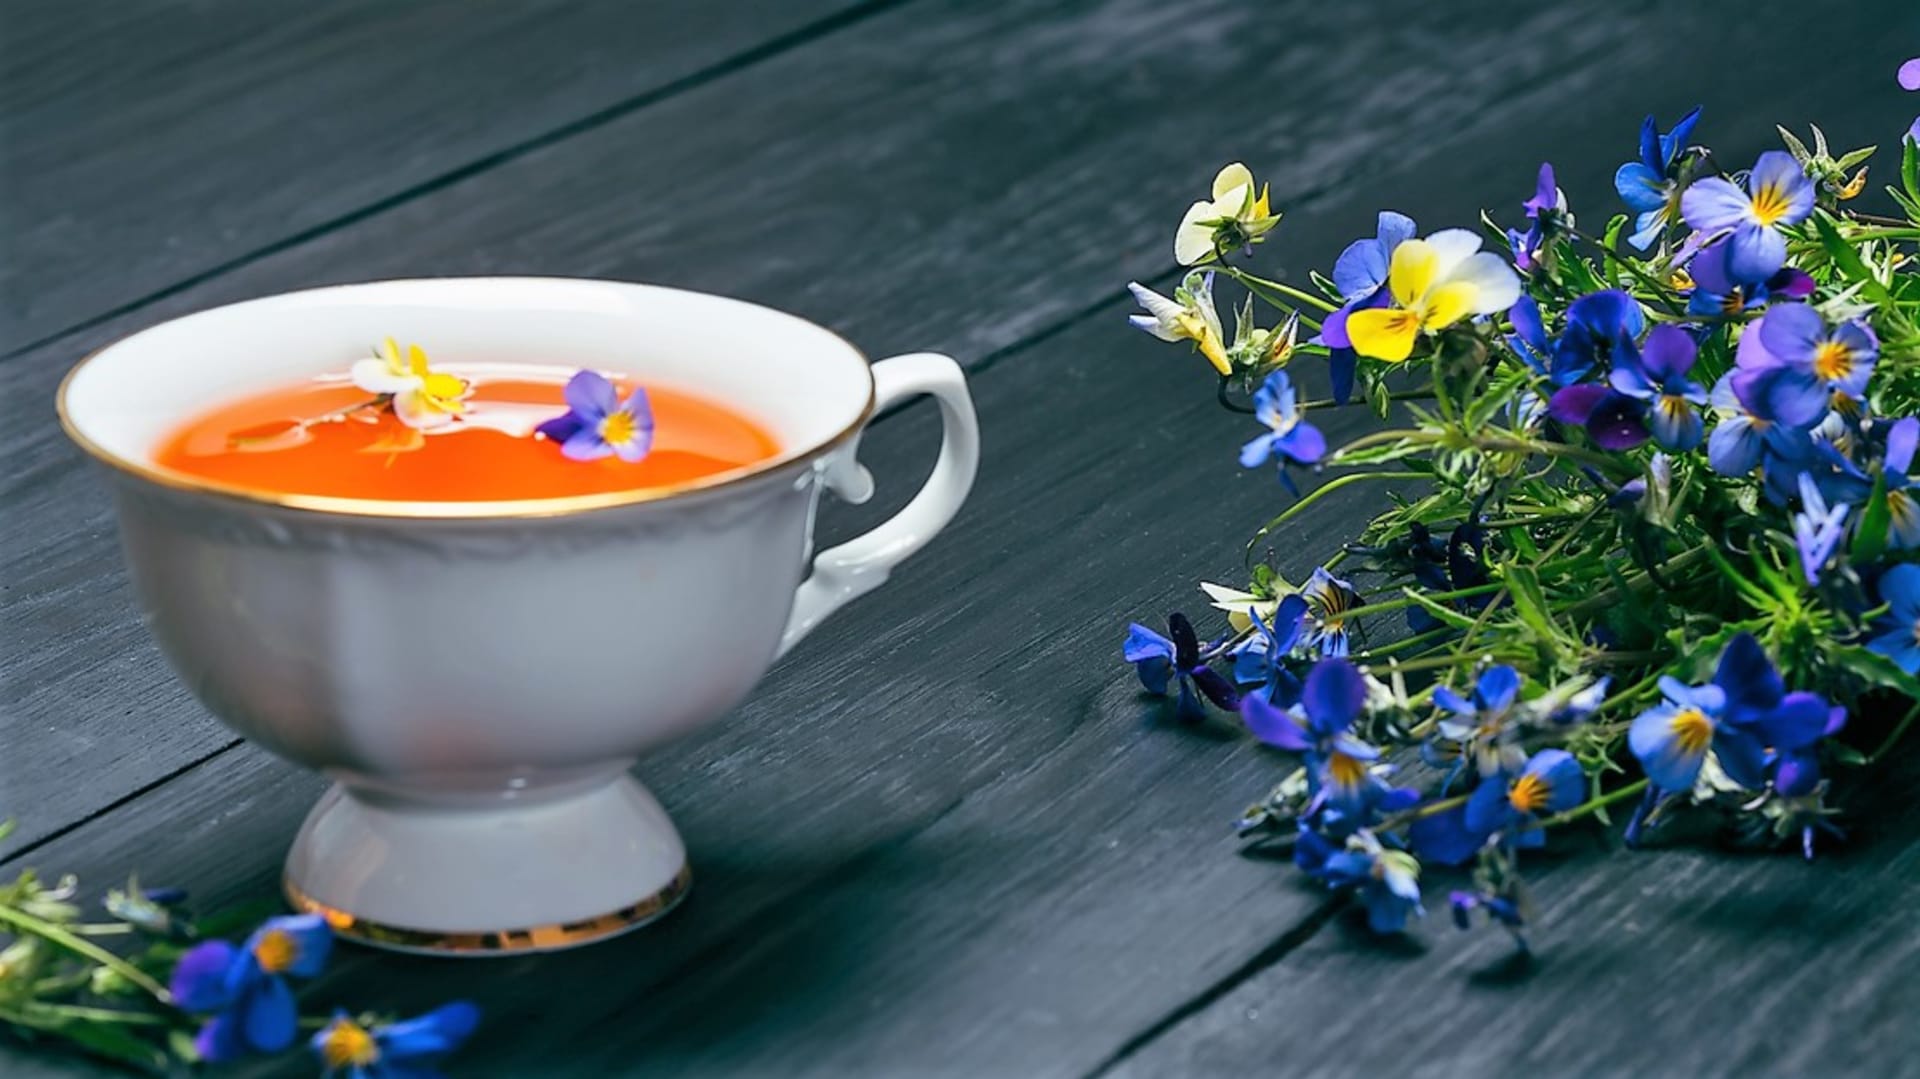 Violkový čaj usnadňuje vykašlávání a podporuje detoxikaci